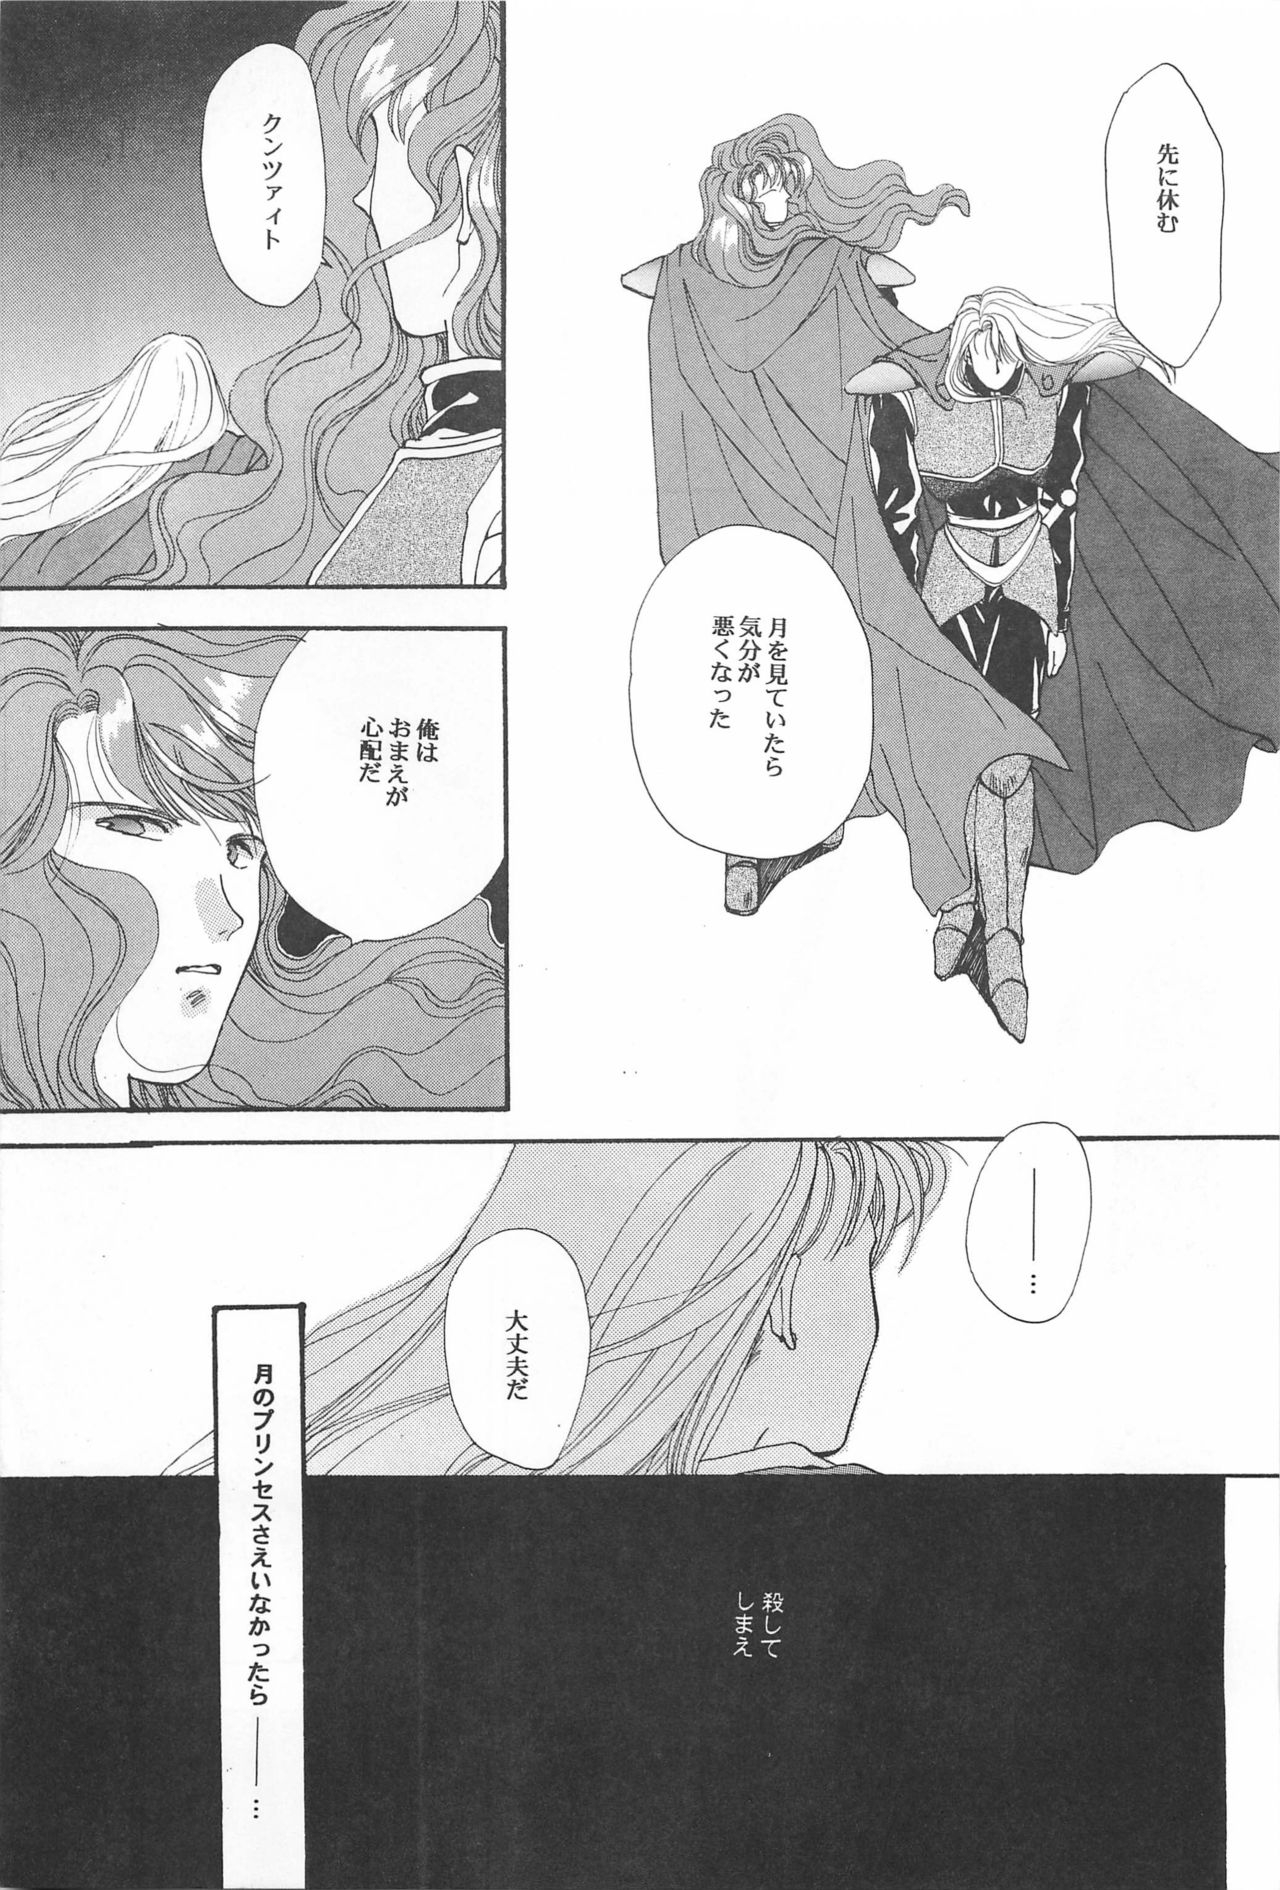 [Hello World (Muttri Moony)] Kaze no You ni Yume no You ni - Sailor Moon Collection (Sailor Moon) 10